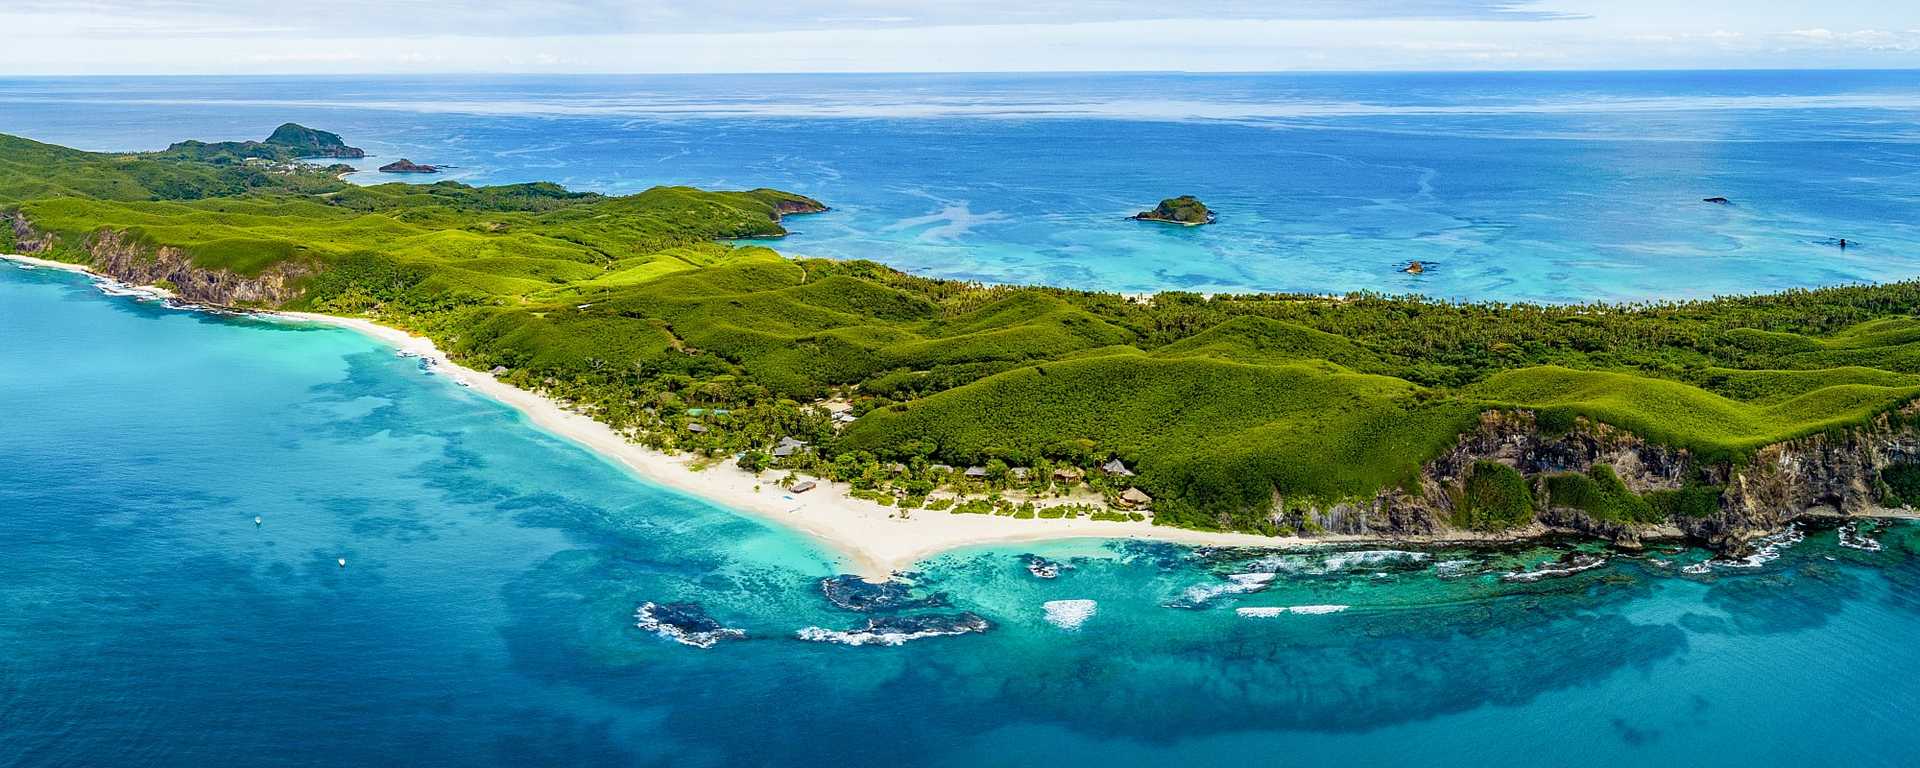 Aerial view over luxury resort in the Fiji Islands